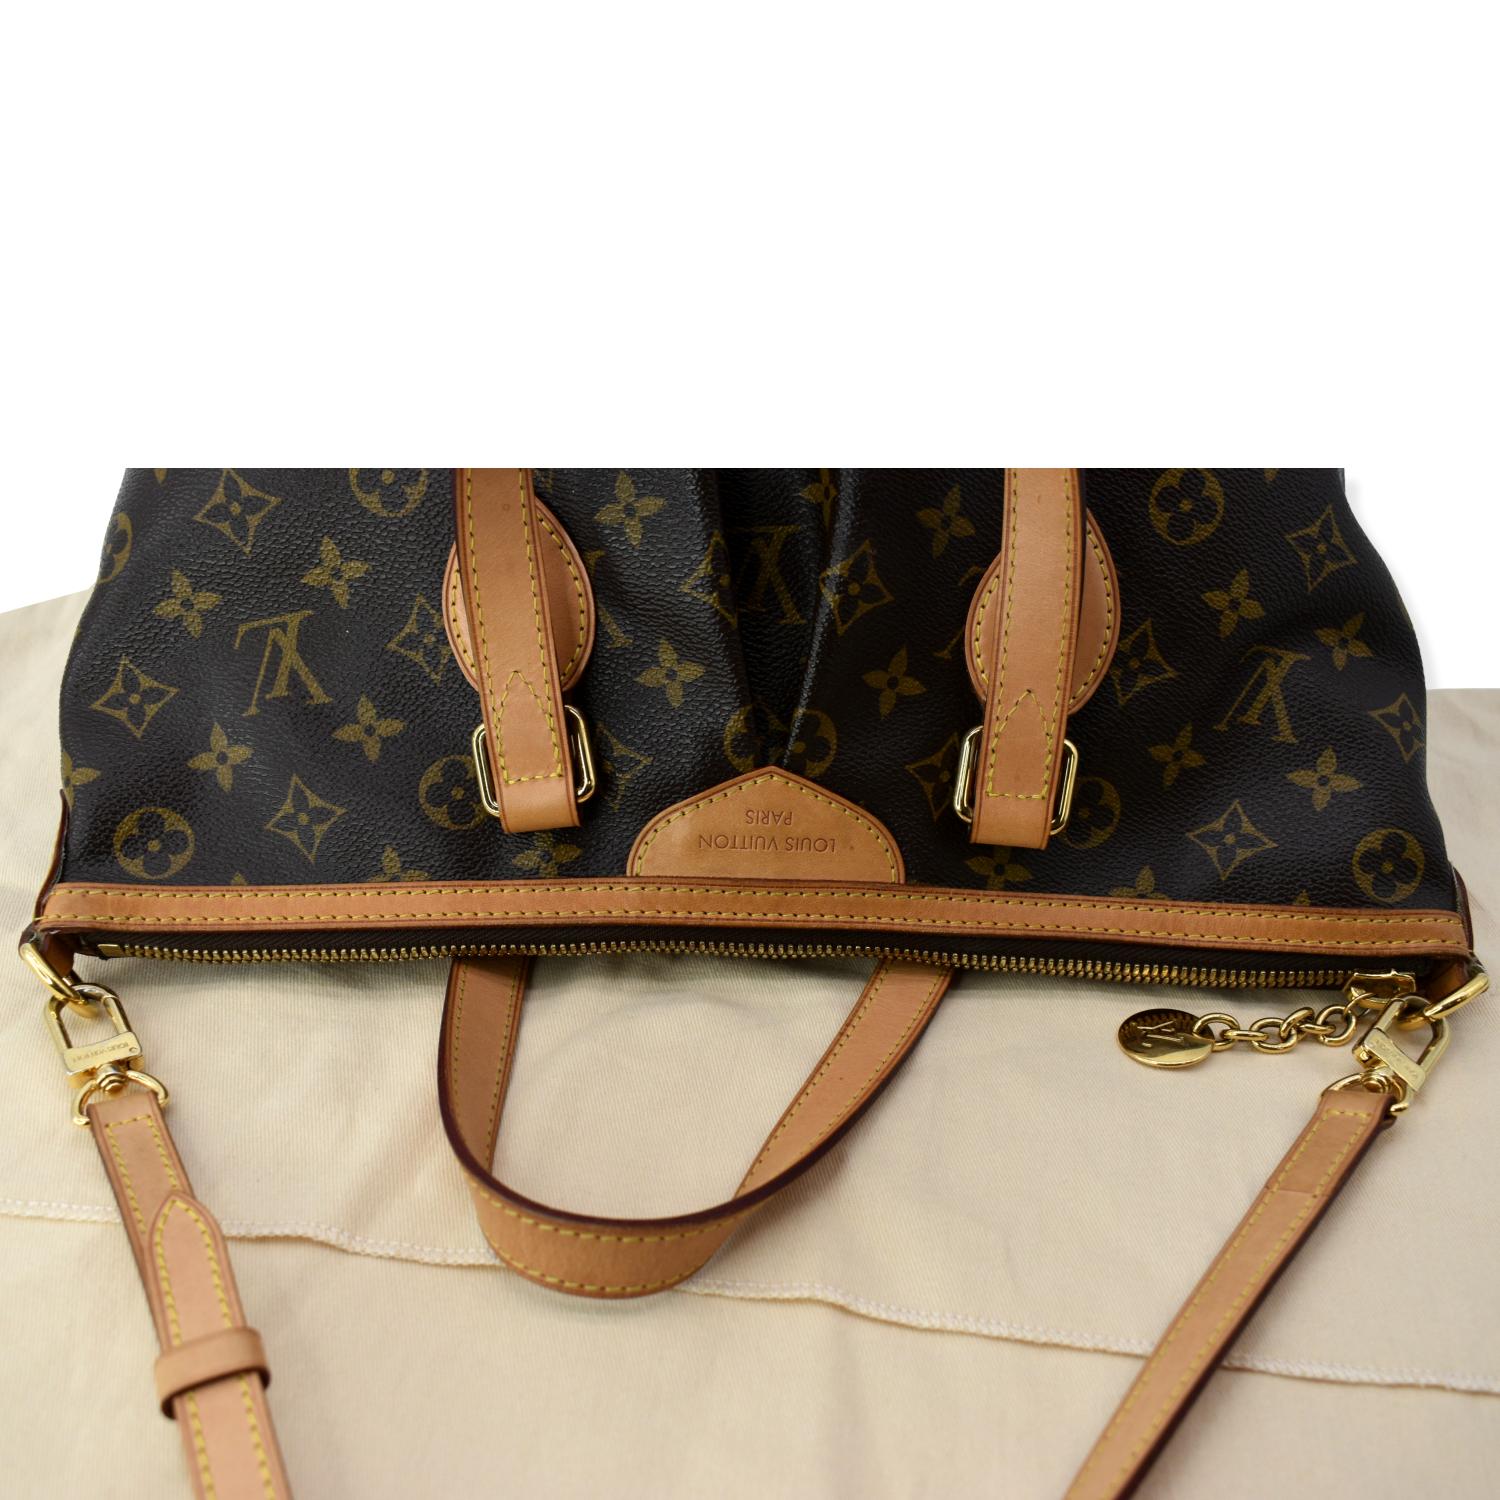 Louis Vuitton Monogram Palermo PM M40145 Ladies 2WAY bag Brown